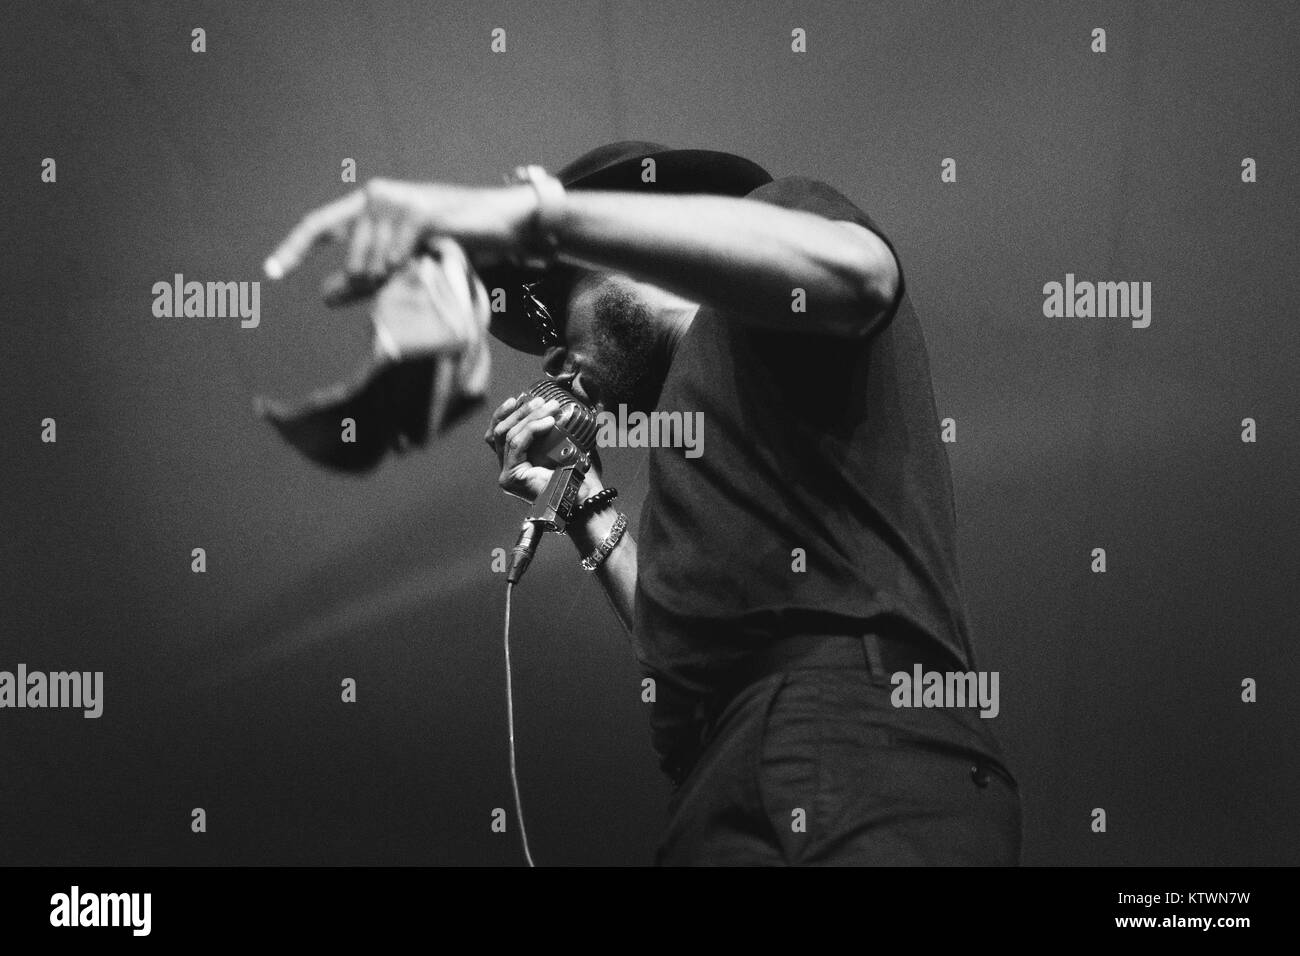 Il rapper americano, cantante, poeta e attore Yasiin Bey a.k.a. Il Mos Def è qui raffigurato in un concerto dal vivo al festival Vanguard 2014 a Copenaghen. Il Mos Def è noto anche dal duo rap stella nera. Danimarca, 02/08 2014. Foto Stock